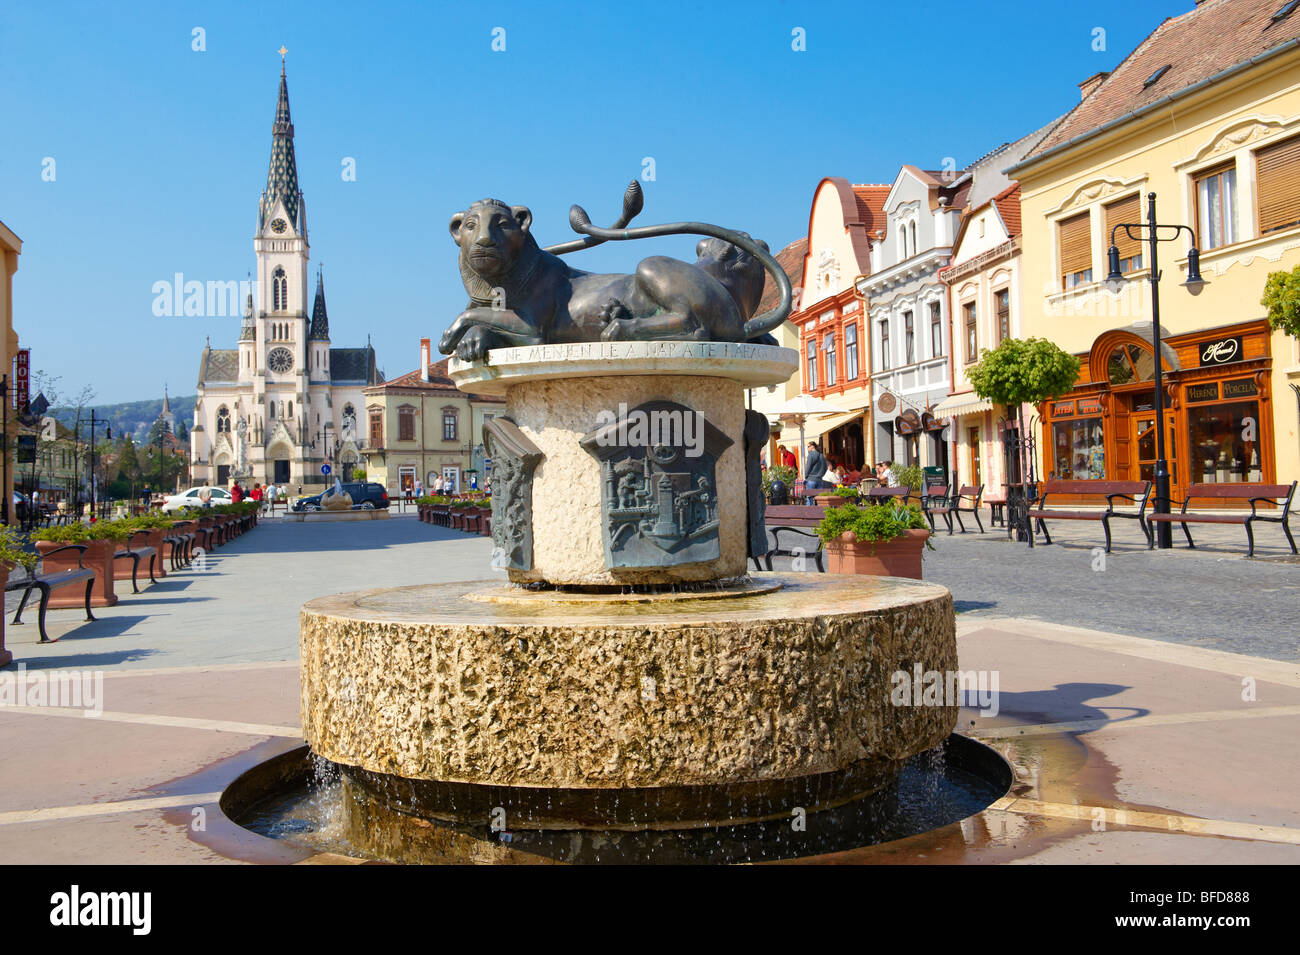 Town square, Kőszeg Hungary Stock Photo